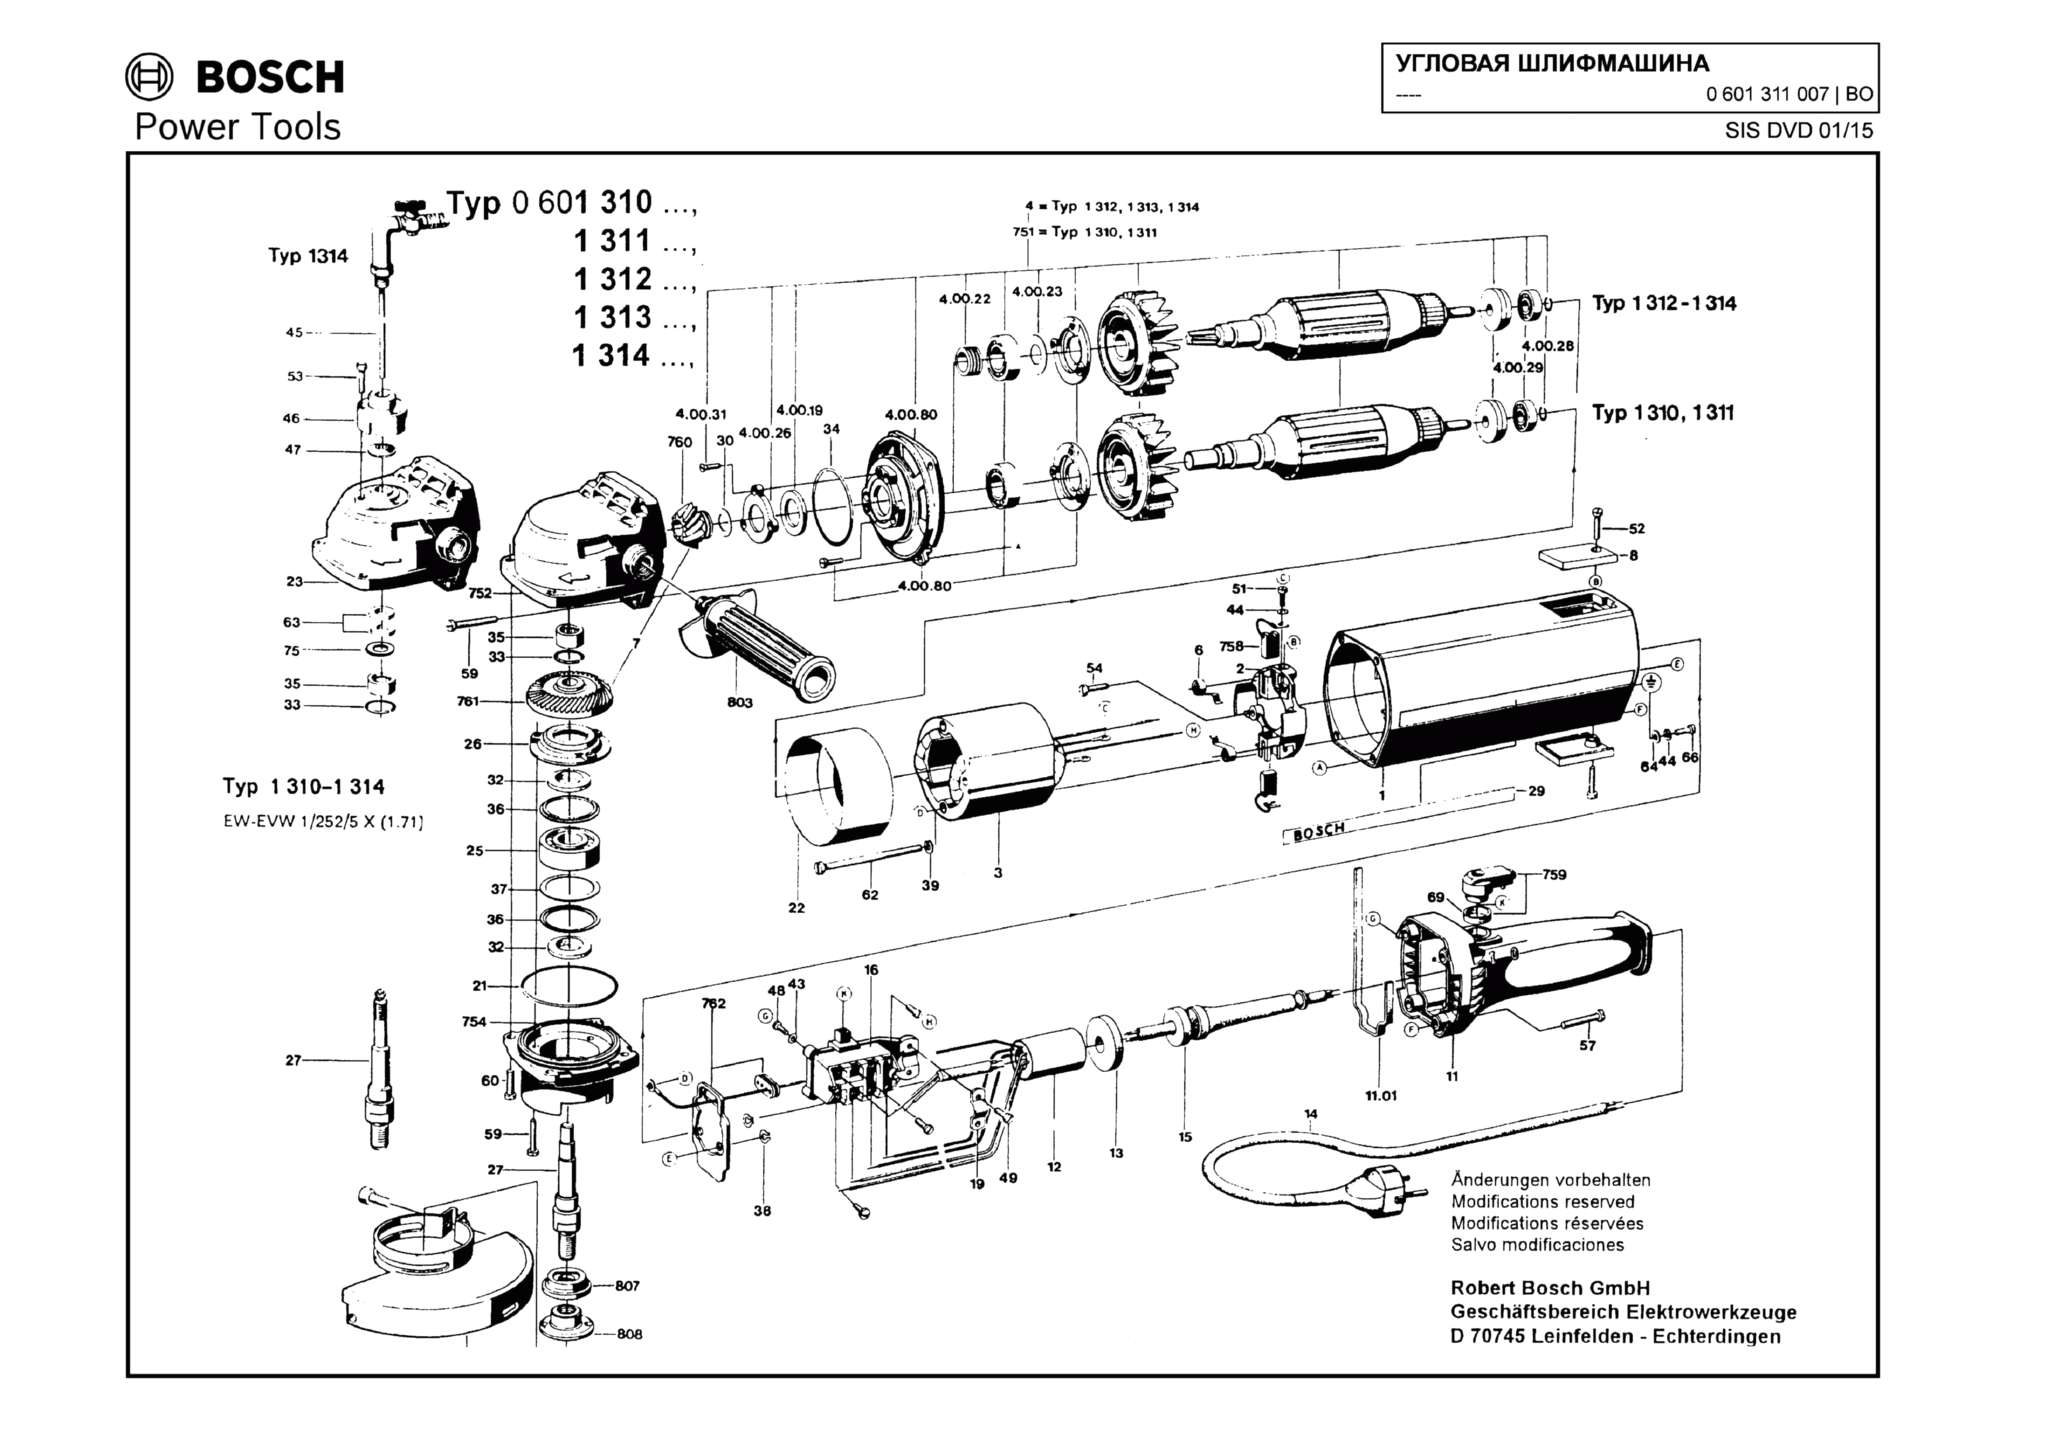 Запчасти, схема и деталировка Bosch (ТИП 0601311007)